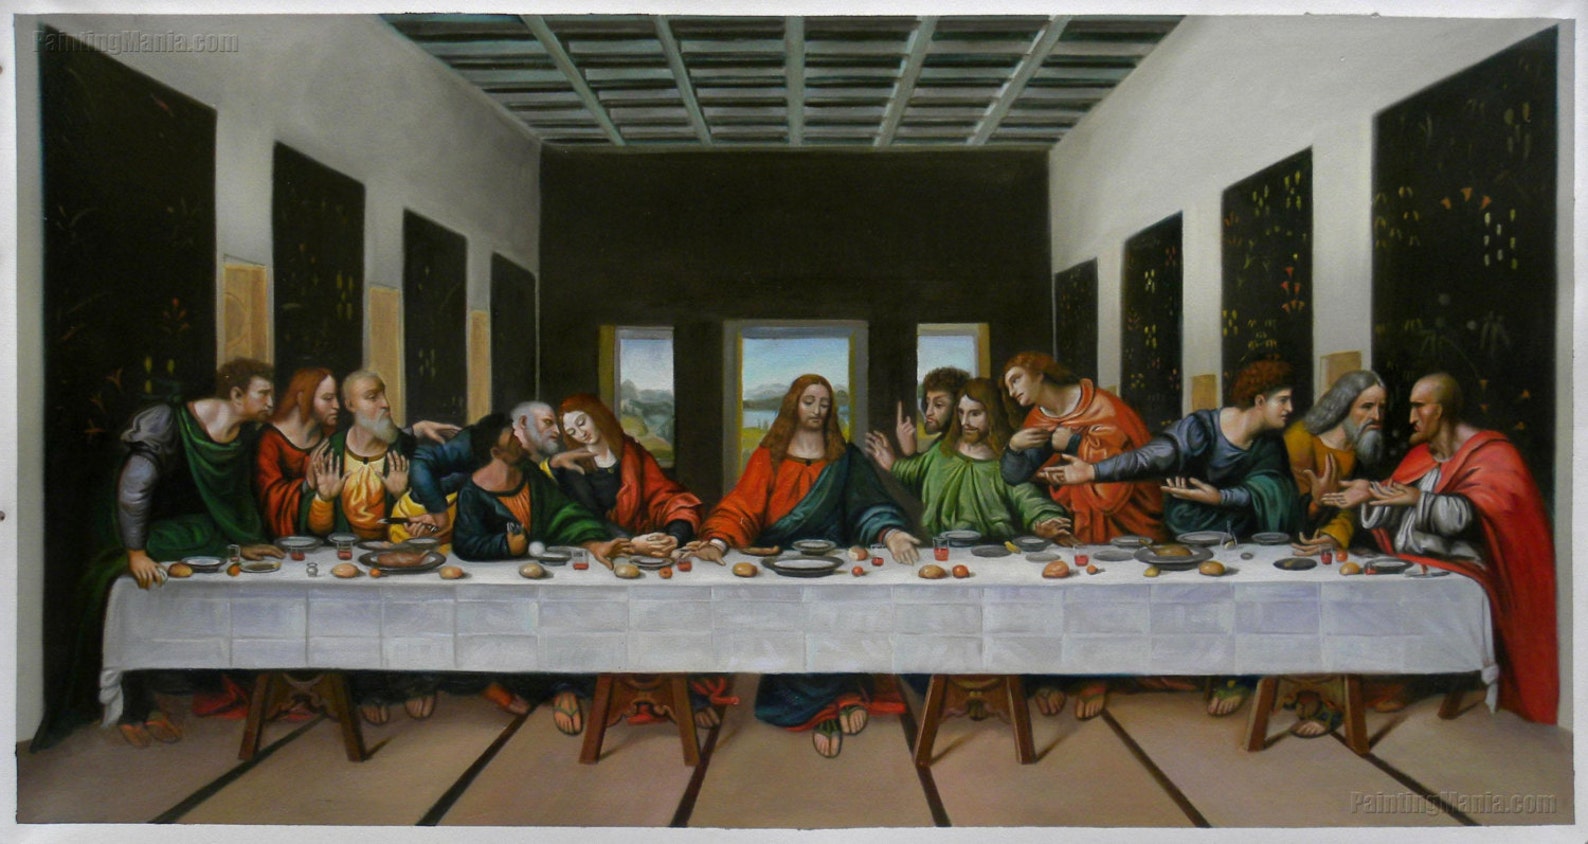 1. "The Last Supper" by Leonardo da Vinci - wide 1